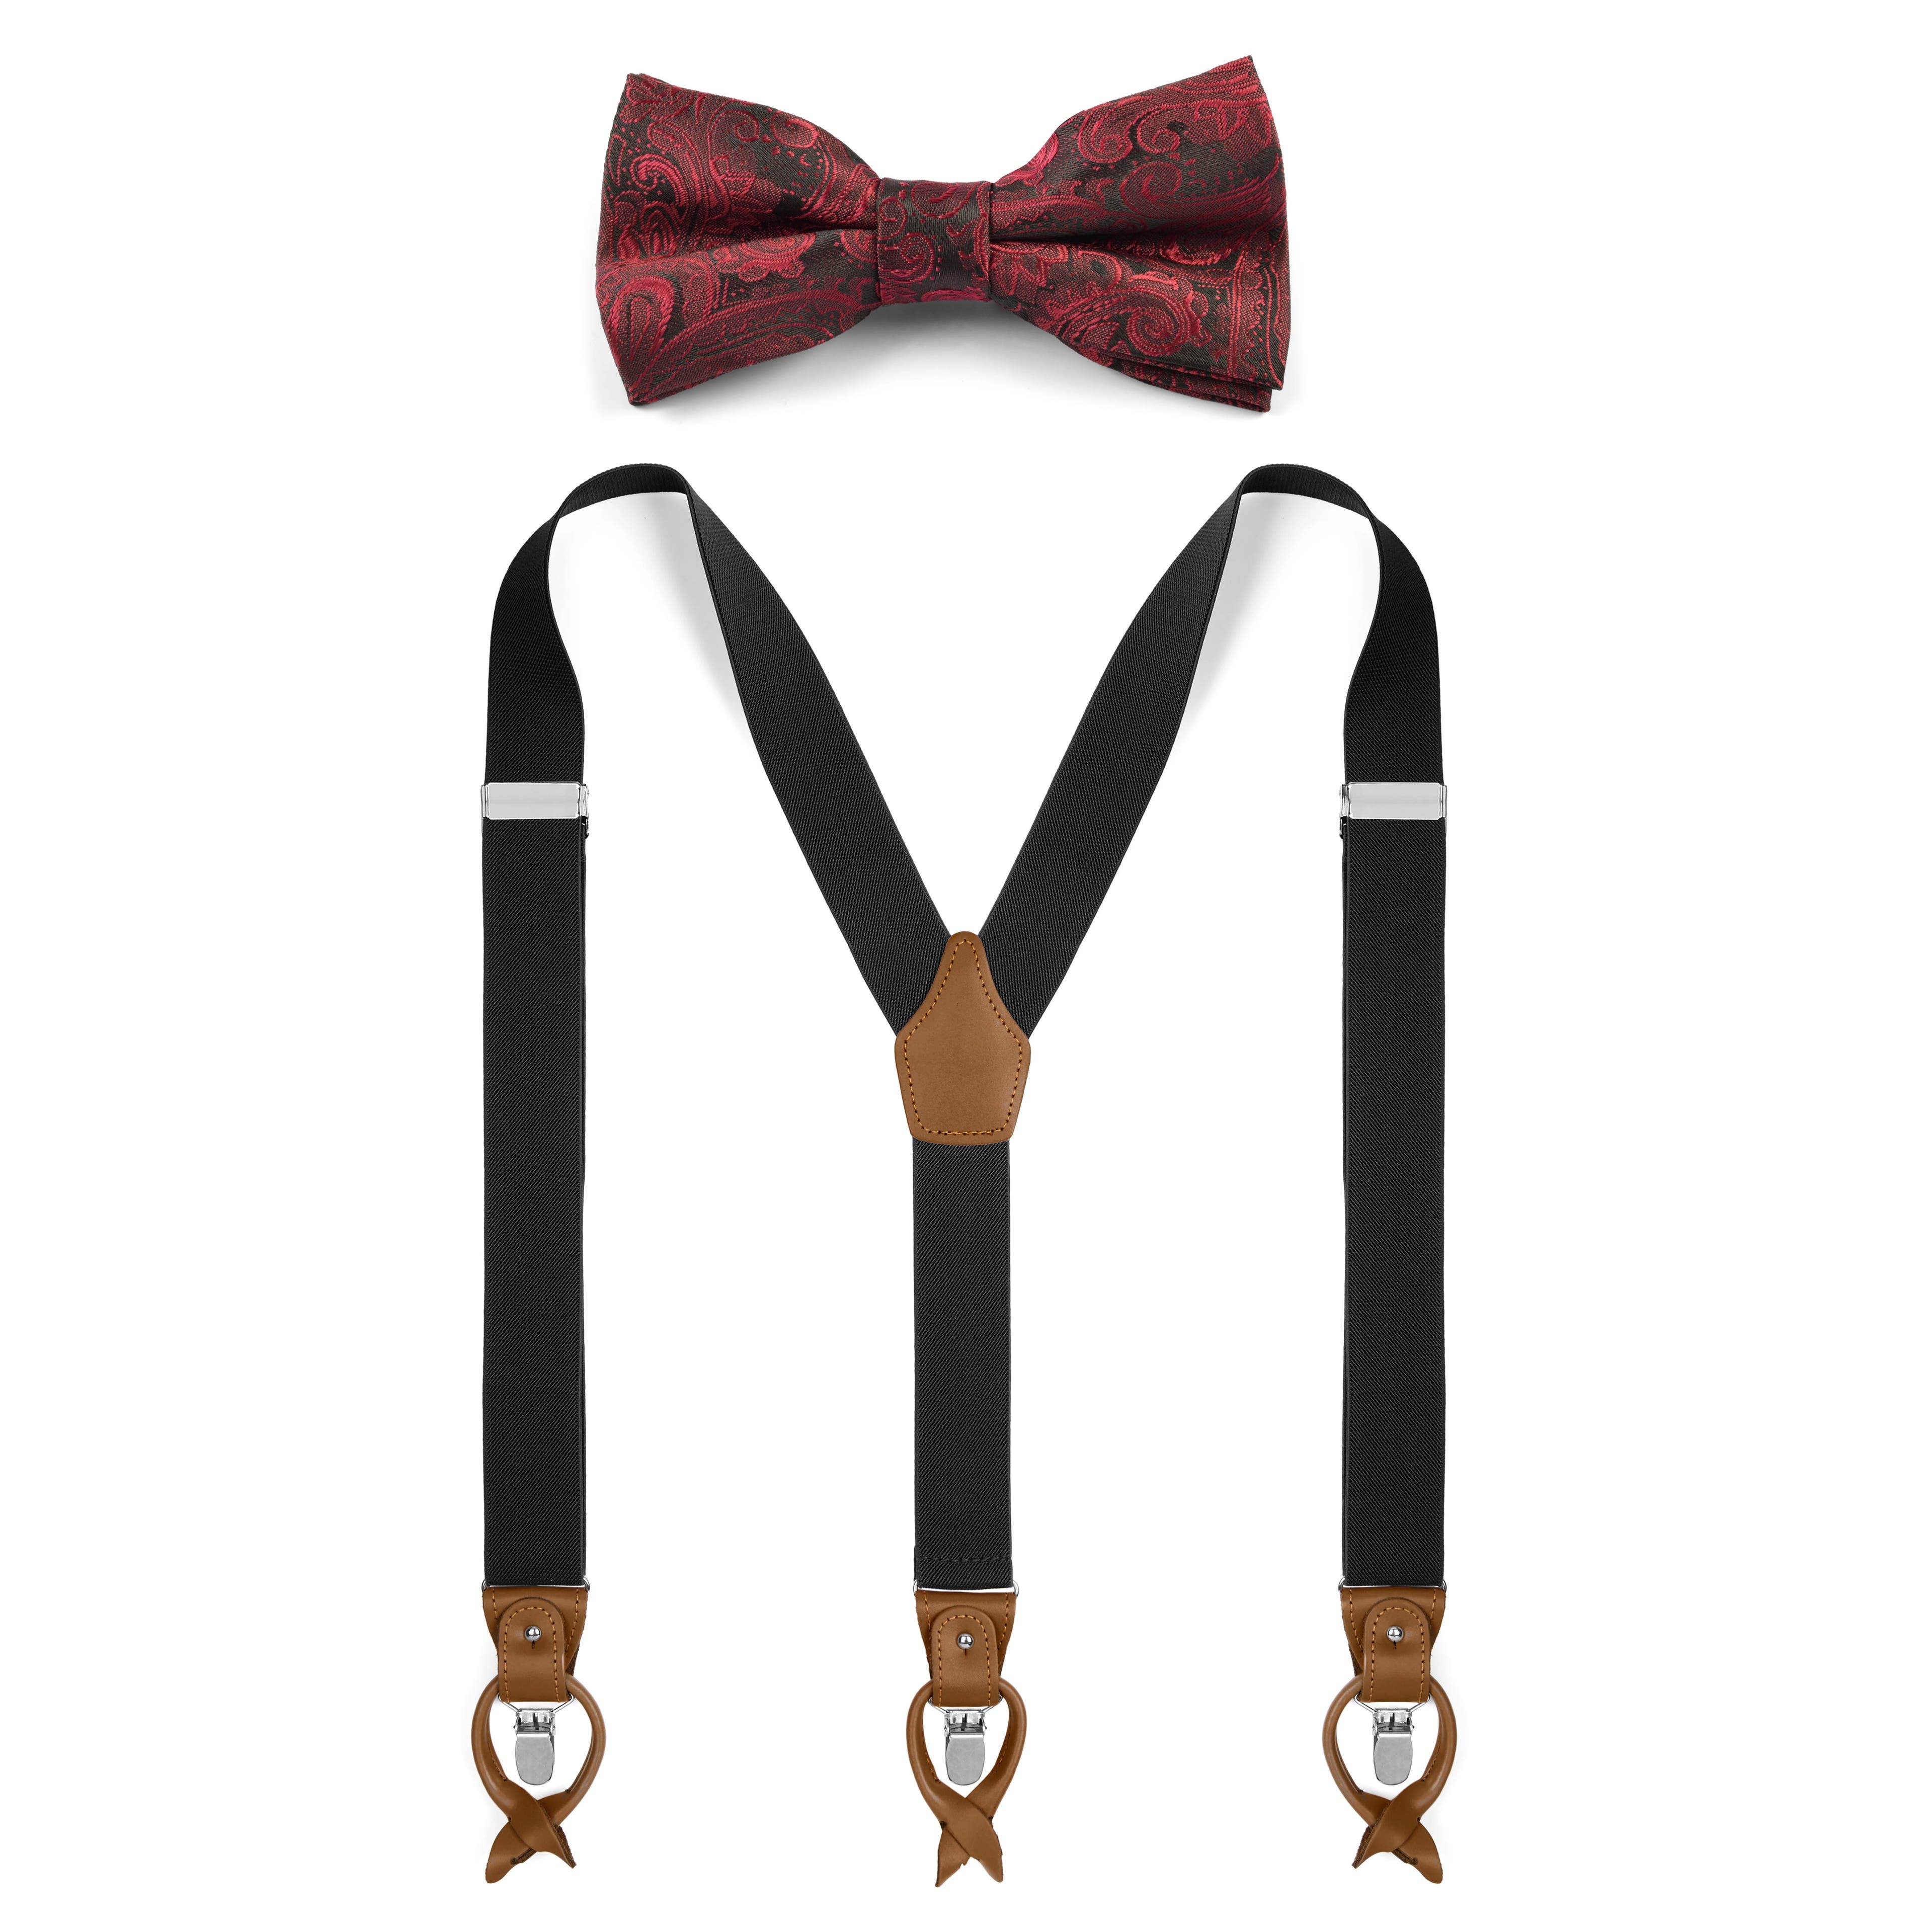 Pre-Tied Bordeaux Bow Tie and Black Braces Set